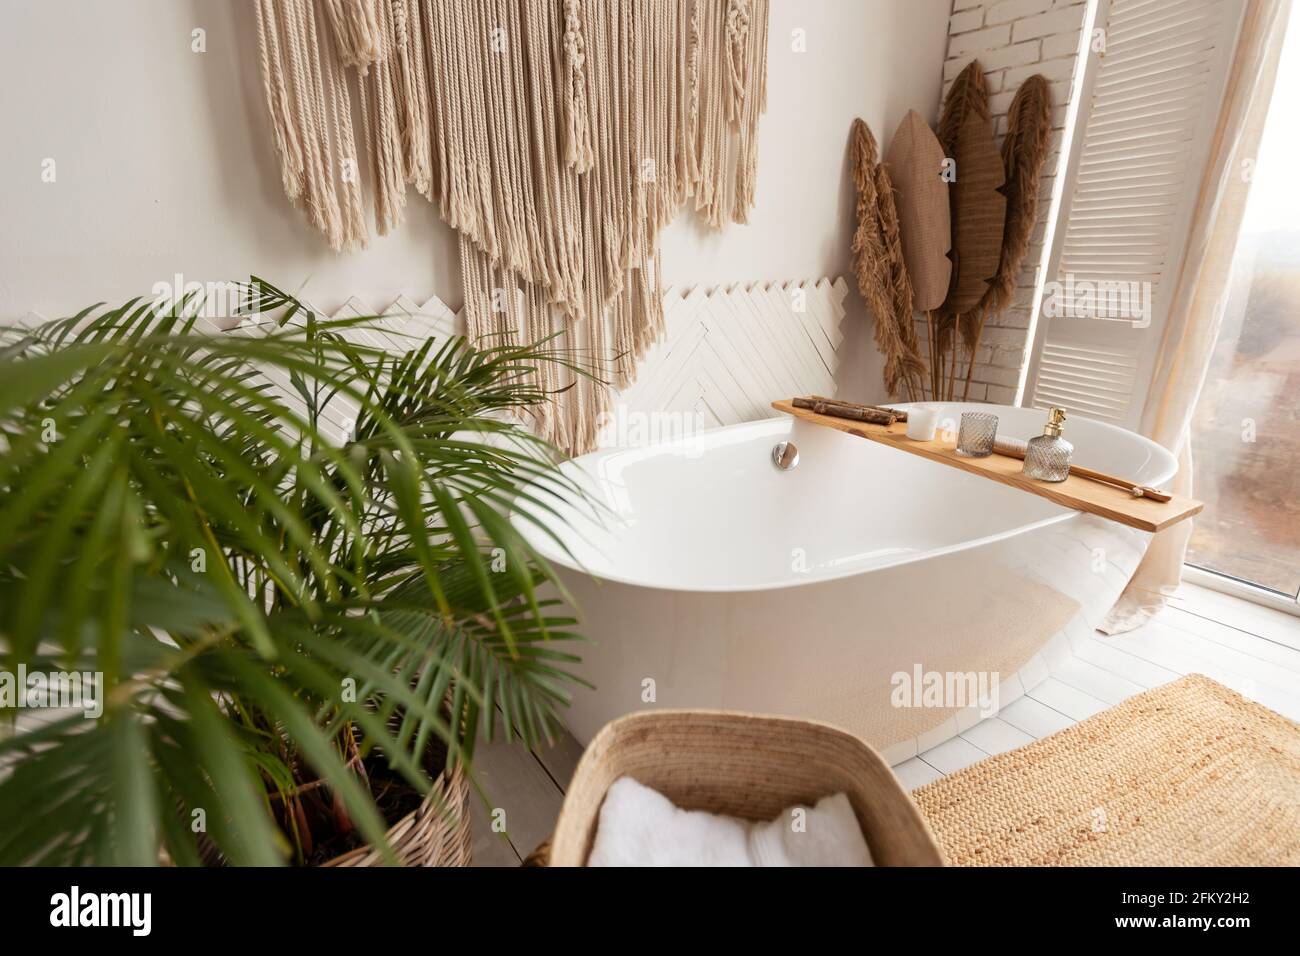 Accogliente interno bagno con grande vasca, piante e decorazioni rustiche Foto Stock